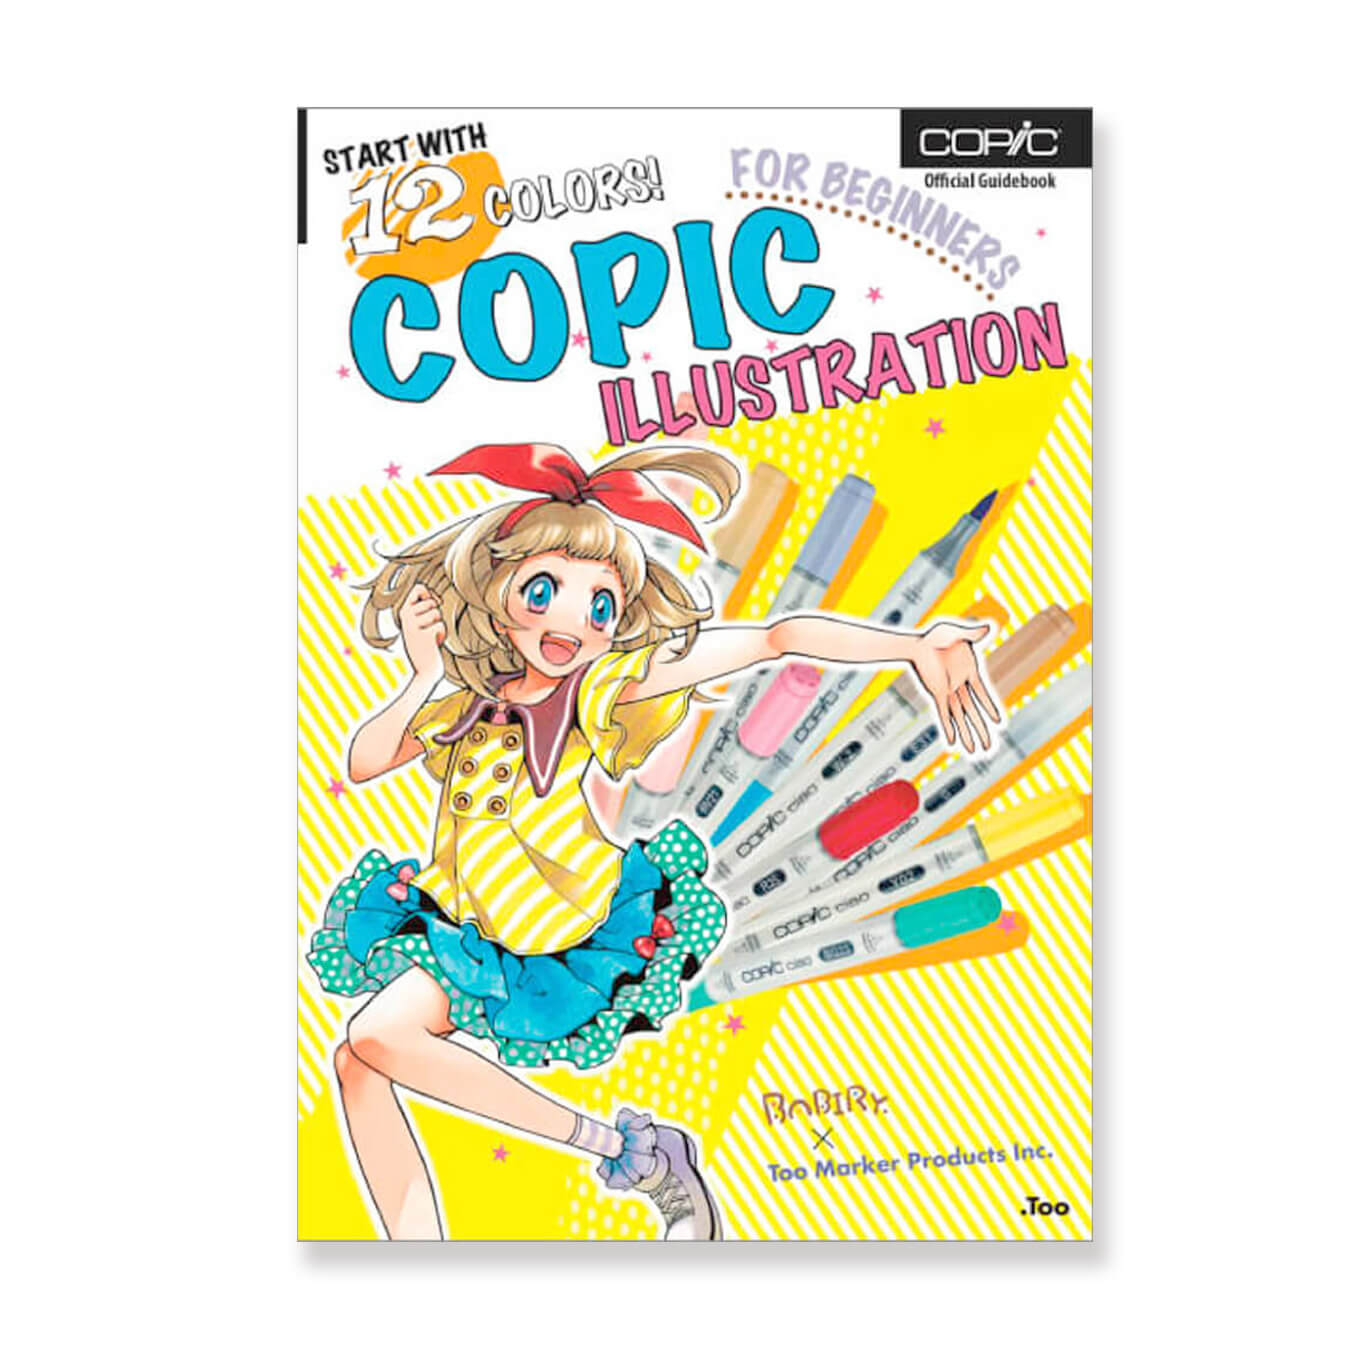 Copic marqueurs Ciao Set Manga Trousse 12 couleurs Uniforme écoliers